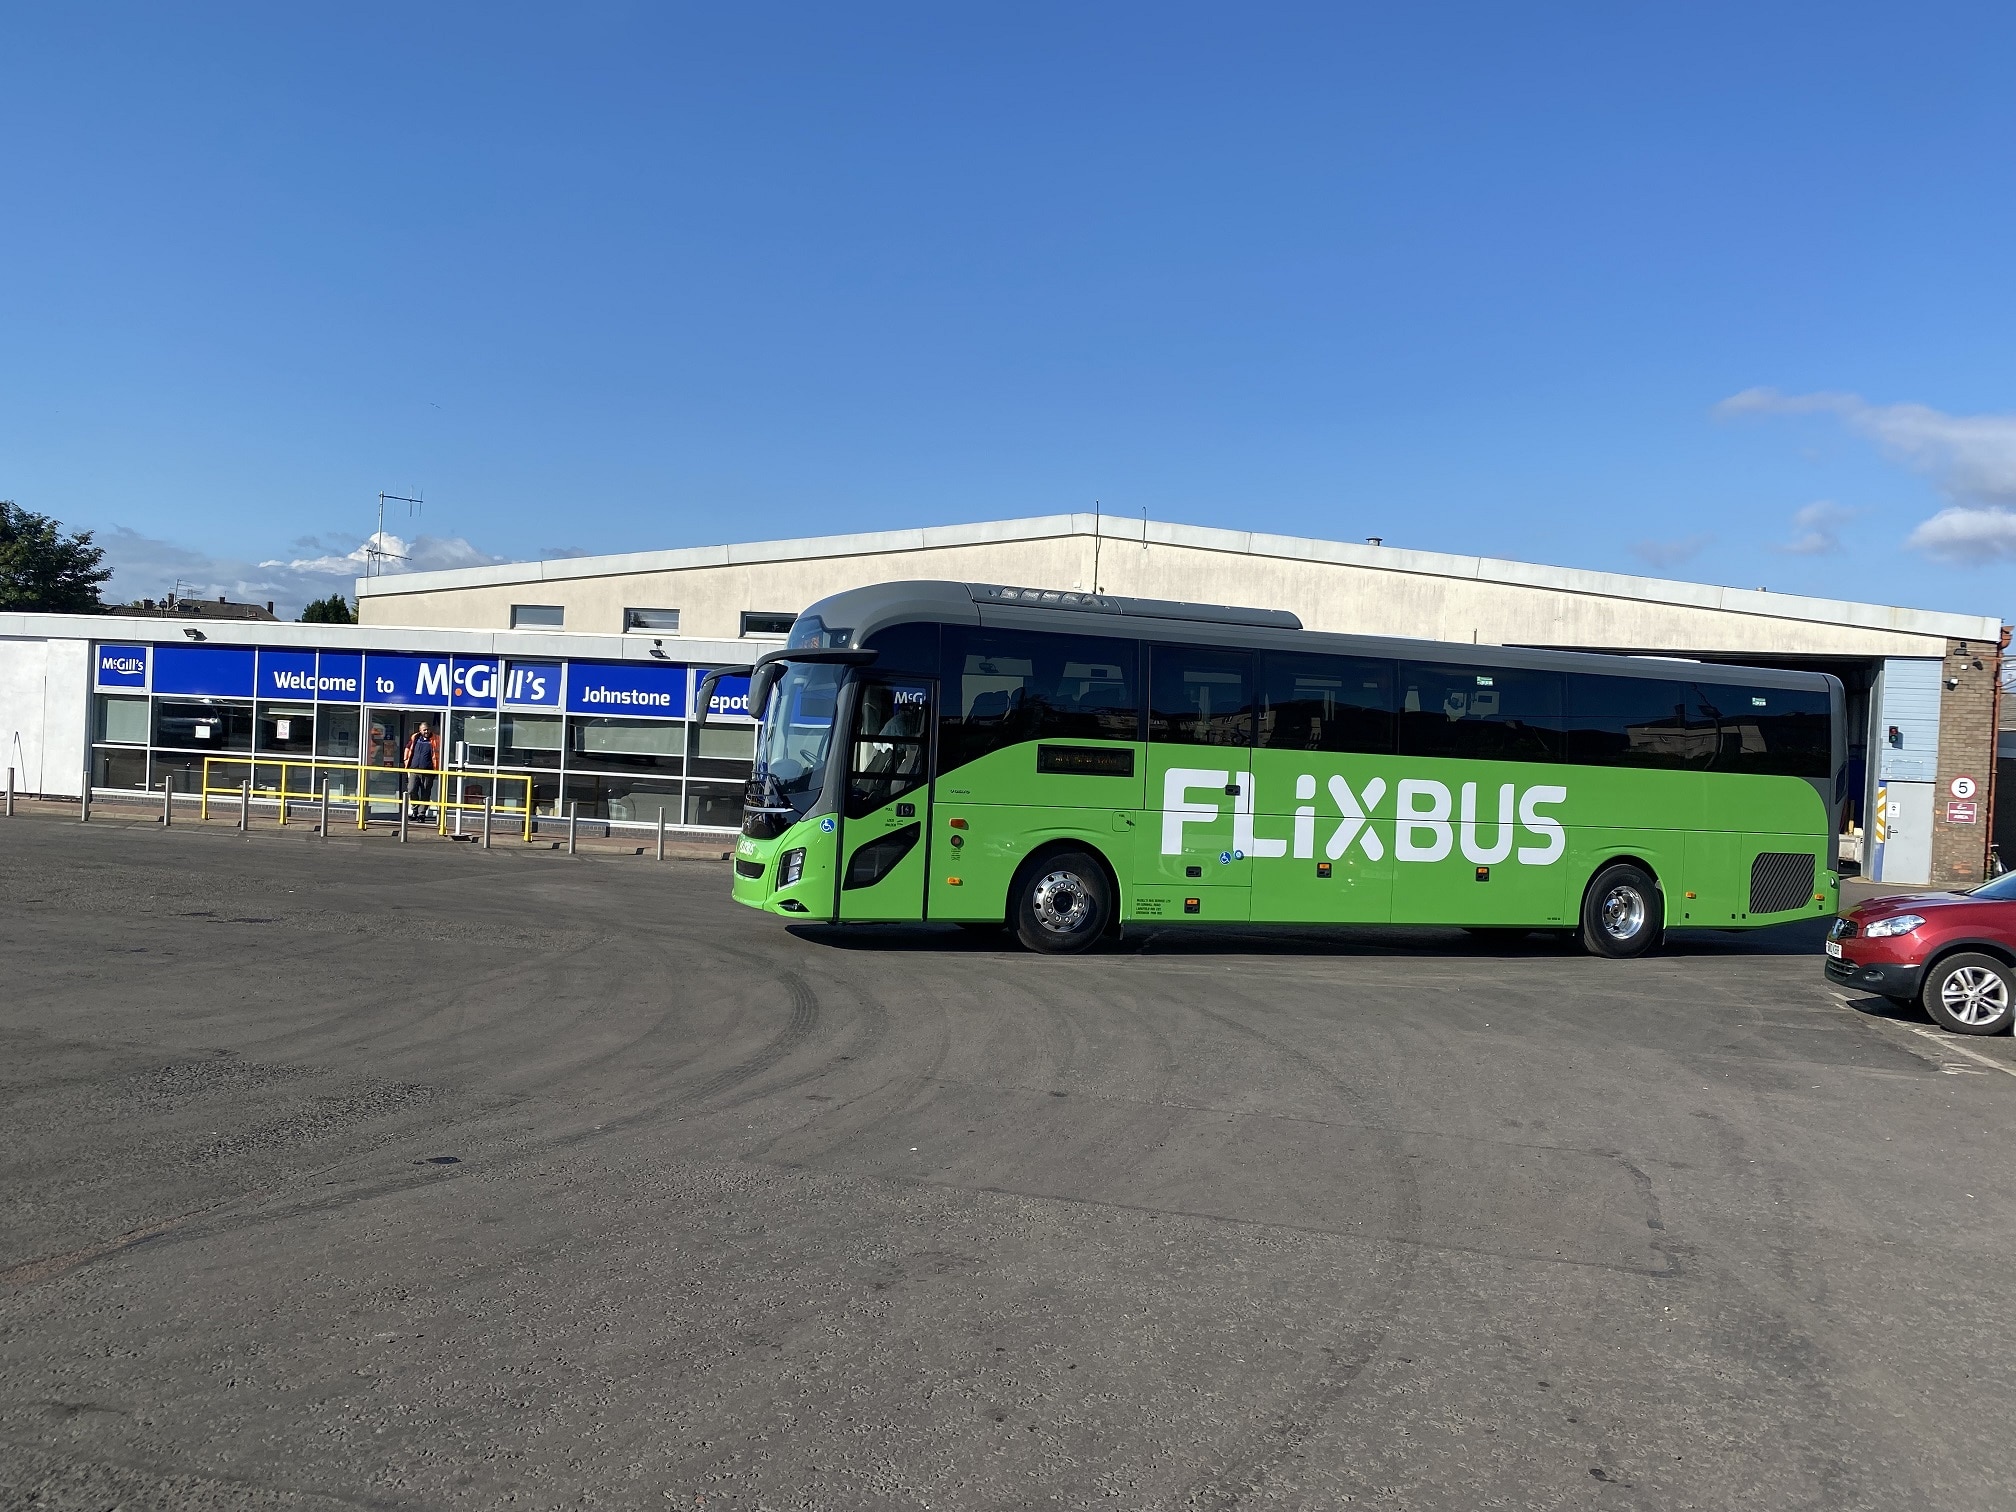 FlixBus UK Volvo 9700 of McGill's Buses